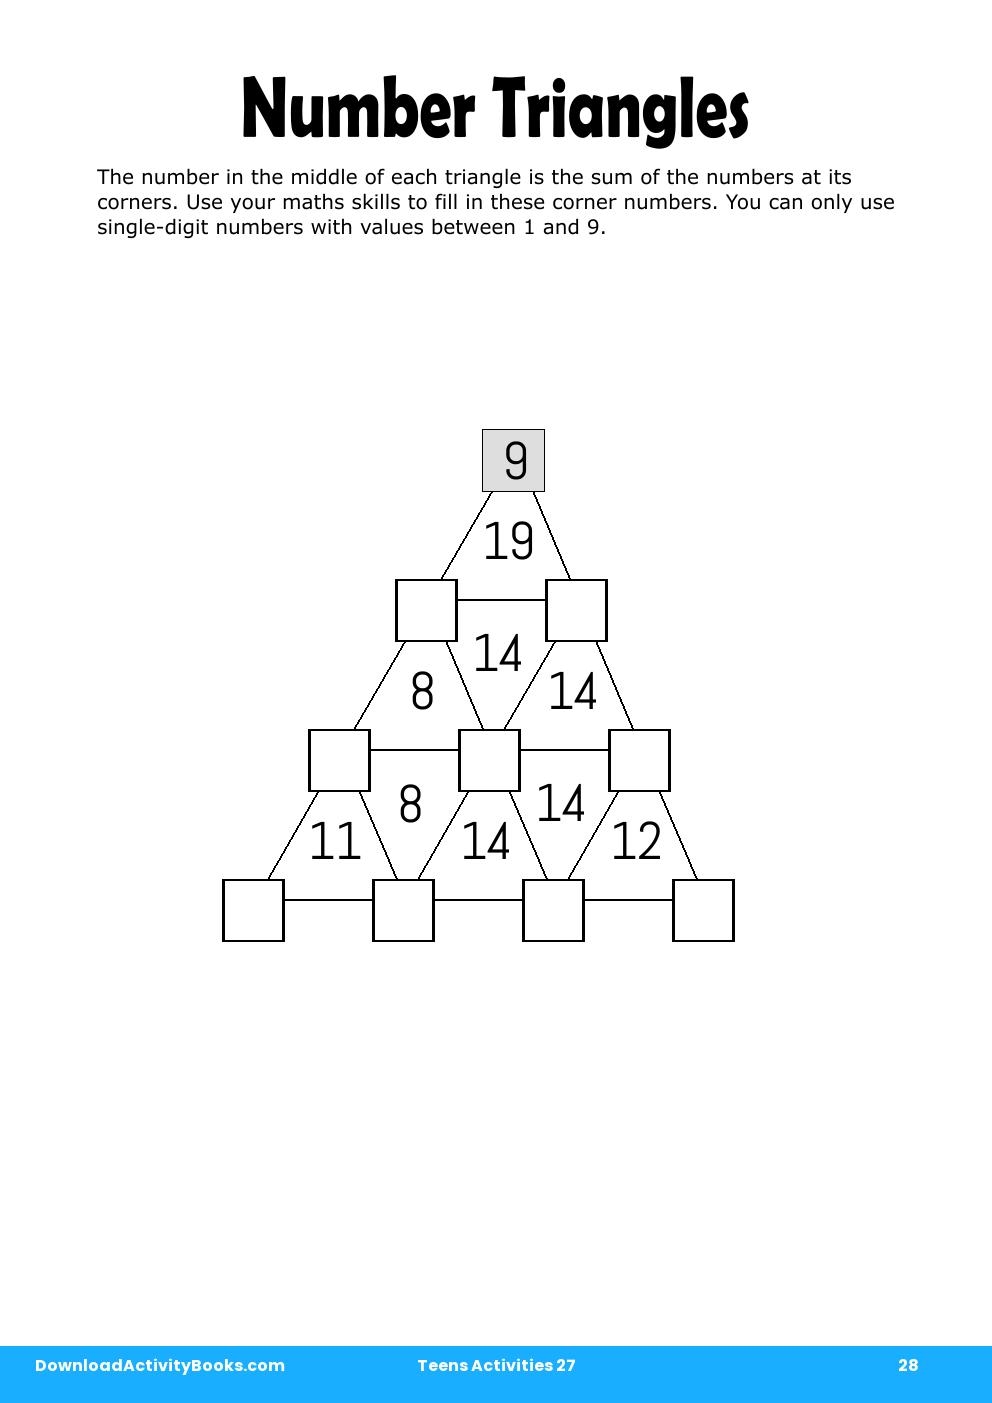 Number Triangles in Teens Activities 27